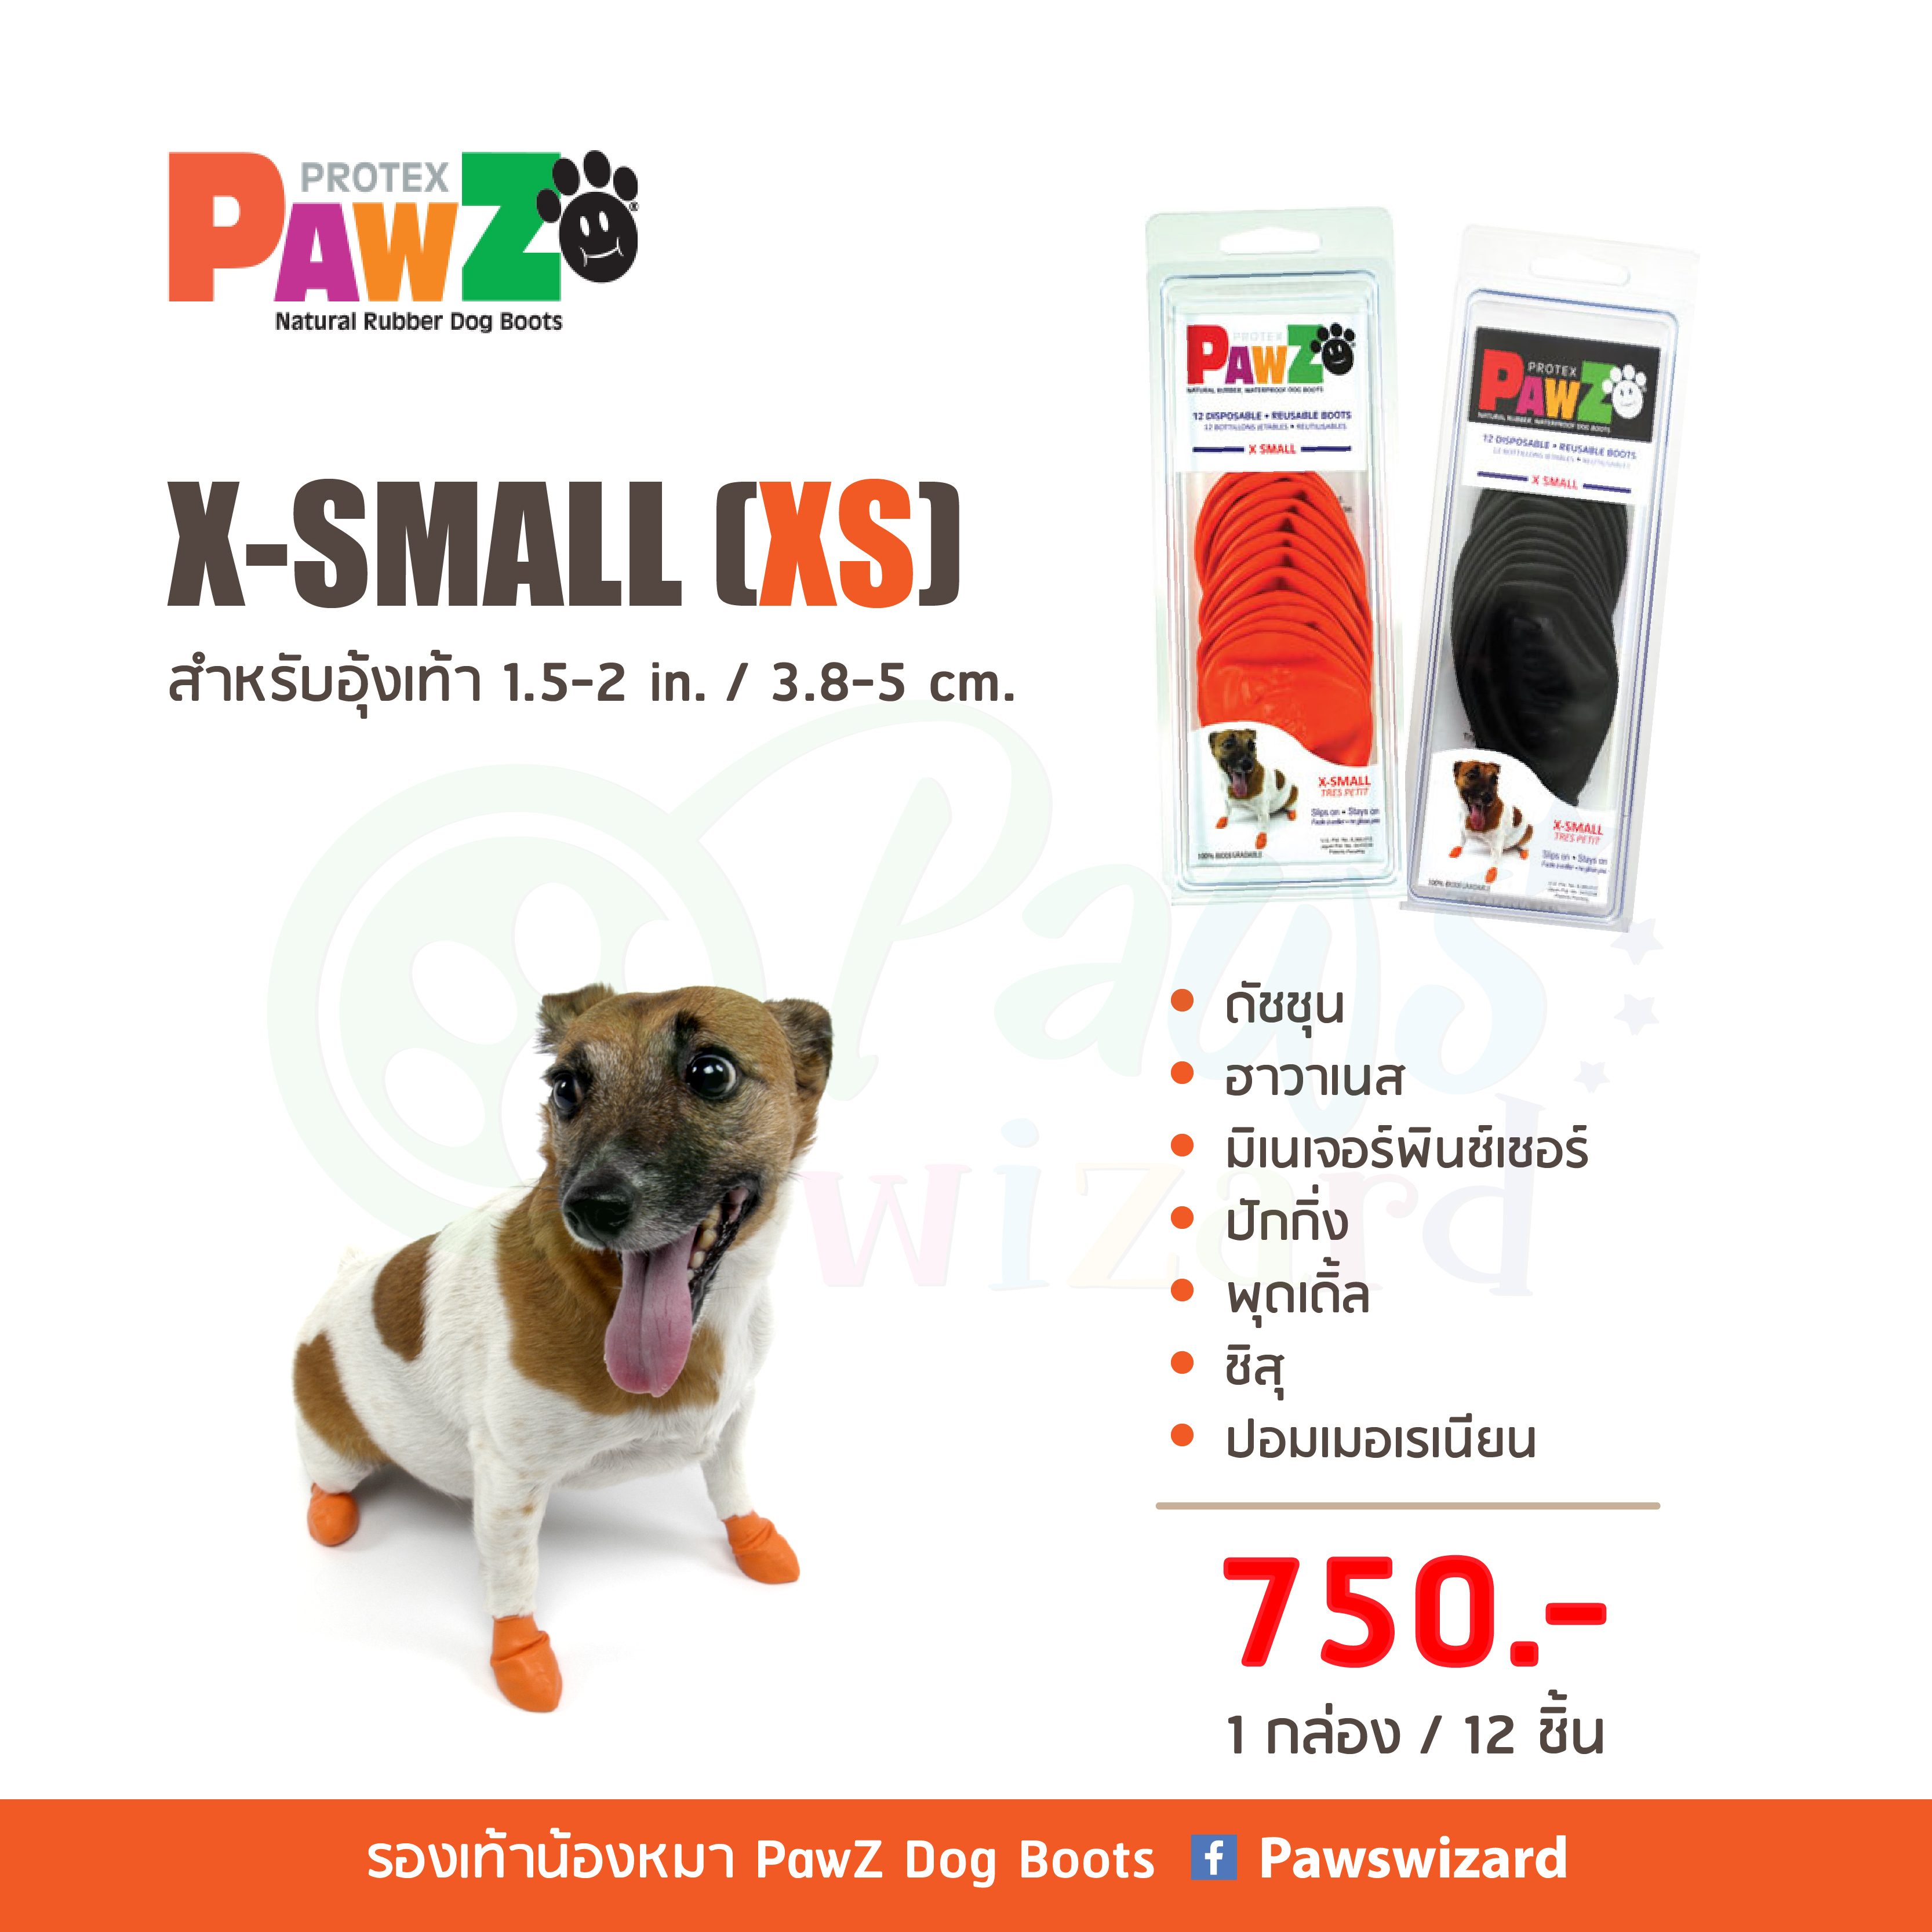 PawZ Dog Boots รองเท้าสุนัข(12ชิ้น) ไซส์ X-SMALL (XS) สำหรับอุ้งเท้า 1.5-2 in. / 3.8-5 cm.